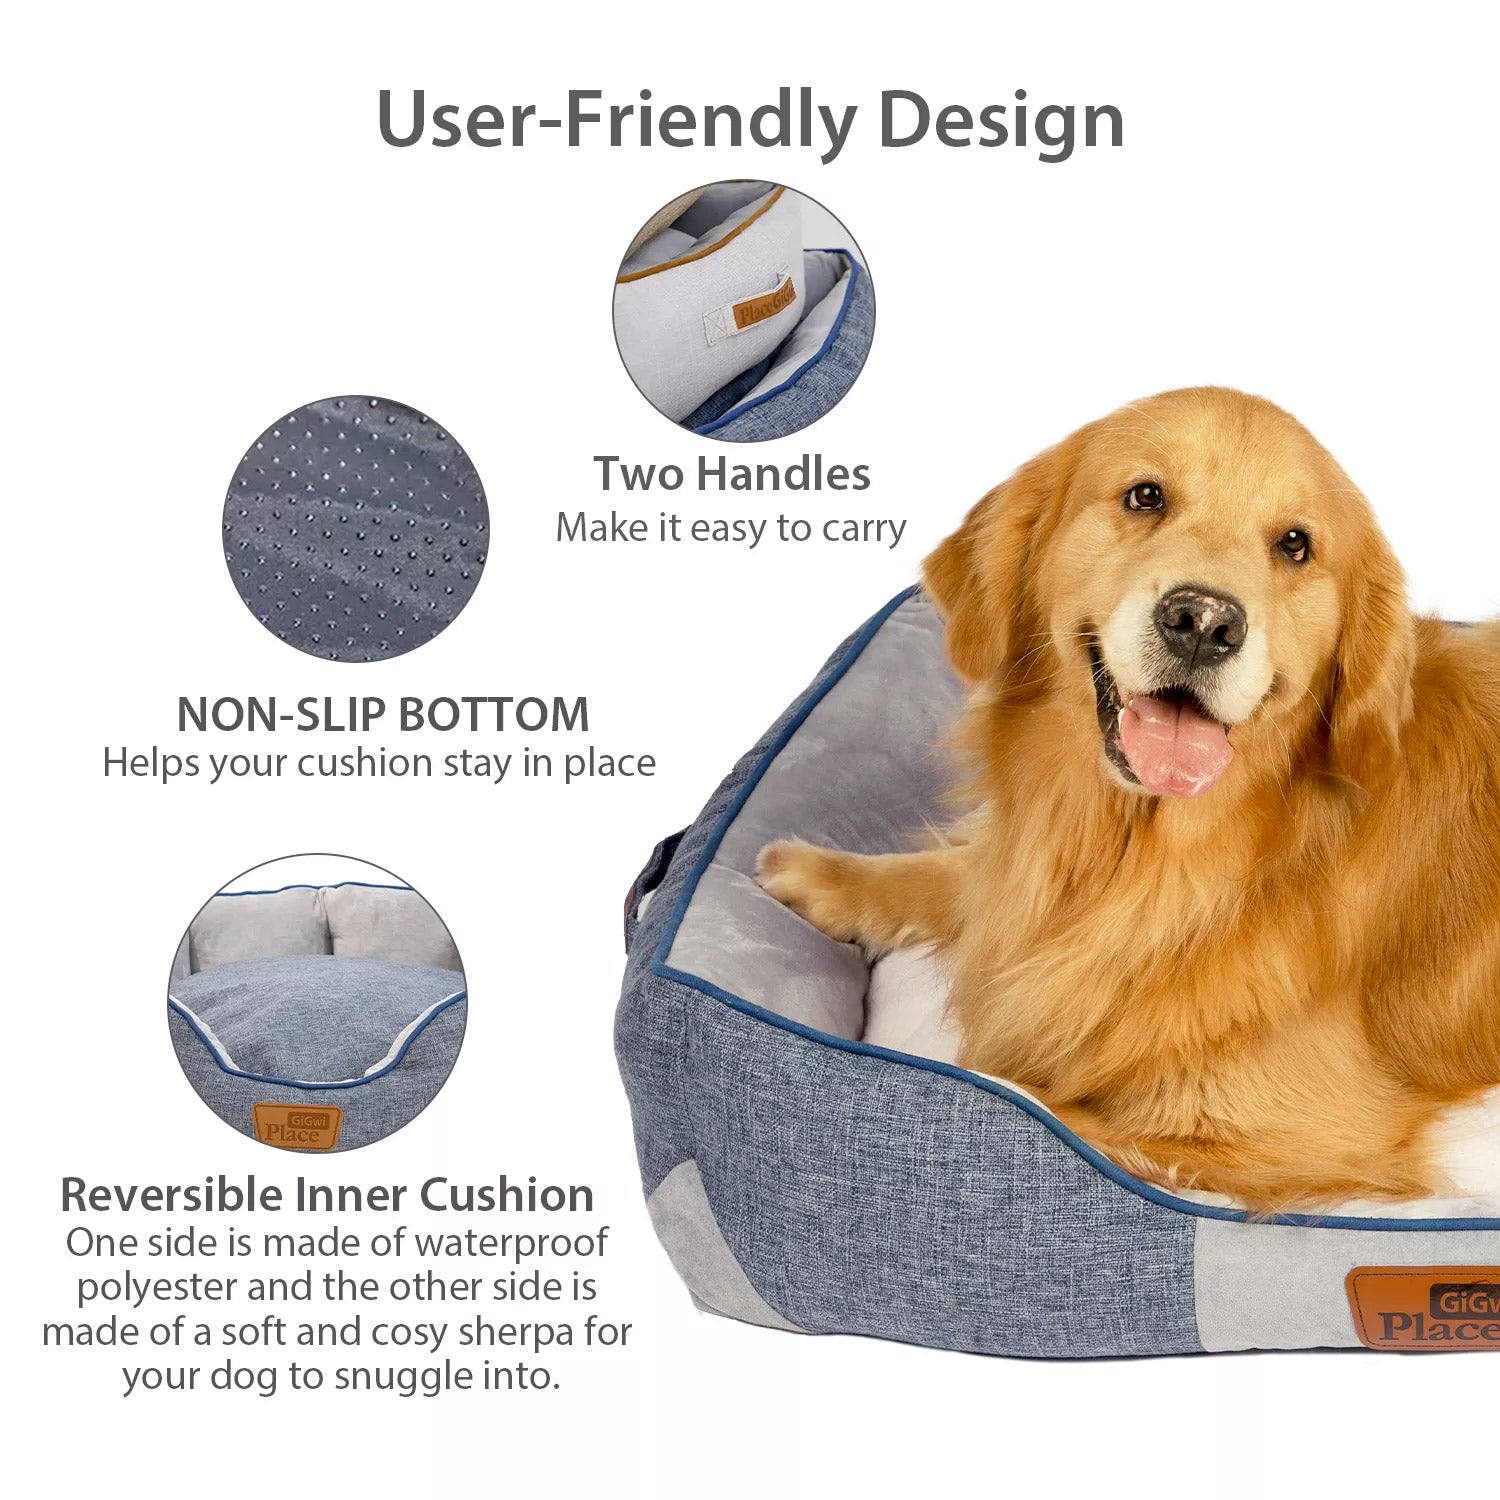 GIGWI Place Cushion Luxury Dog Bed